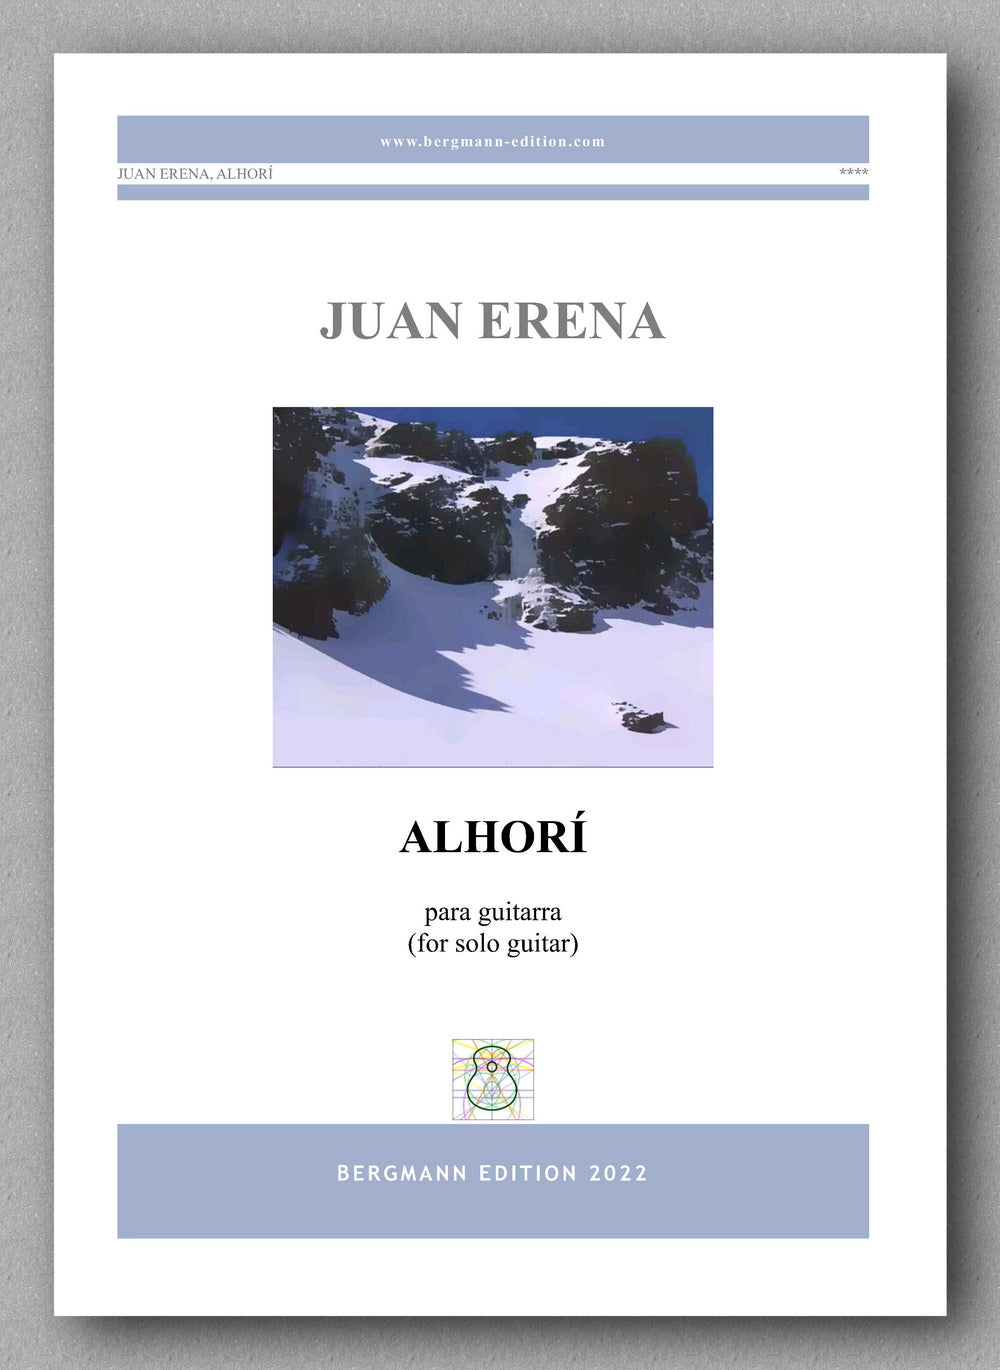 Juan Erena, ALHORÍ - preview of the cover